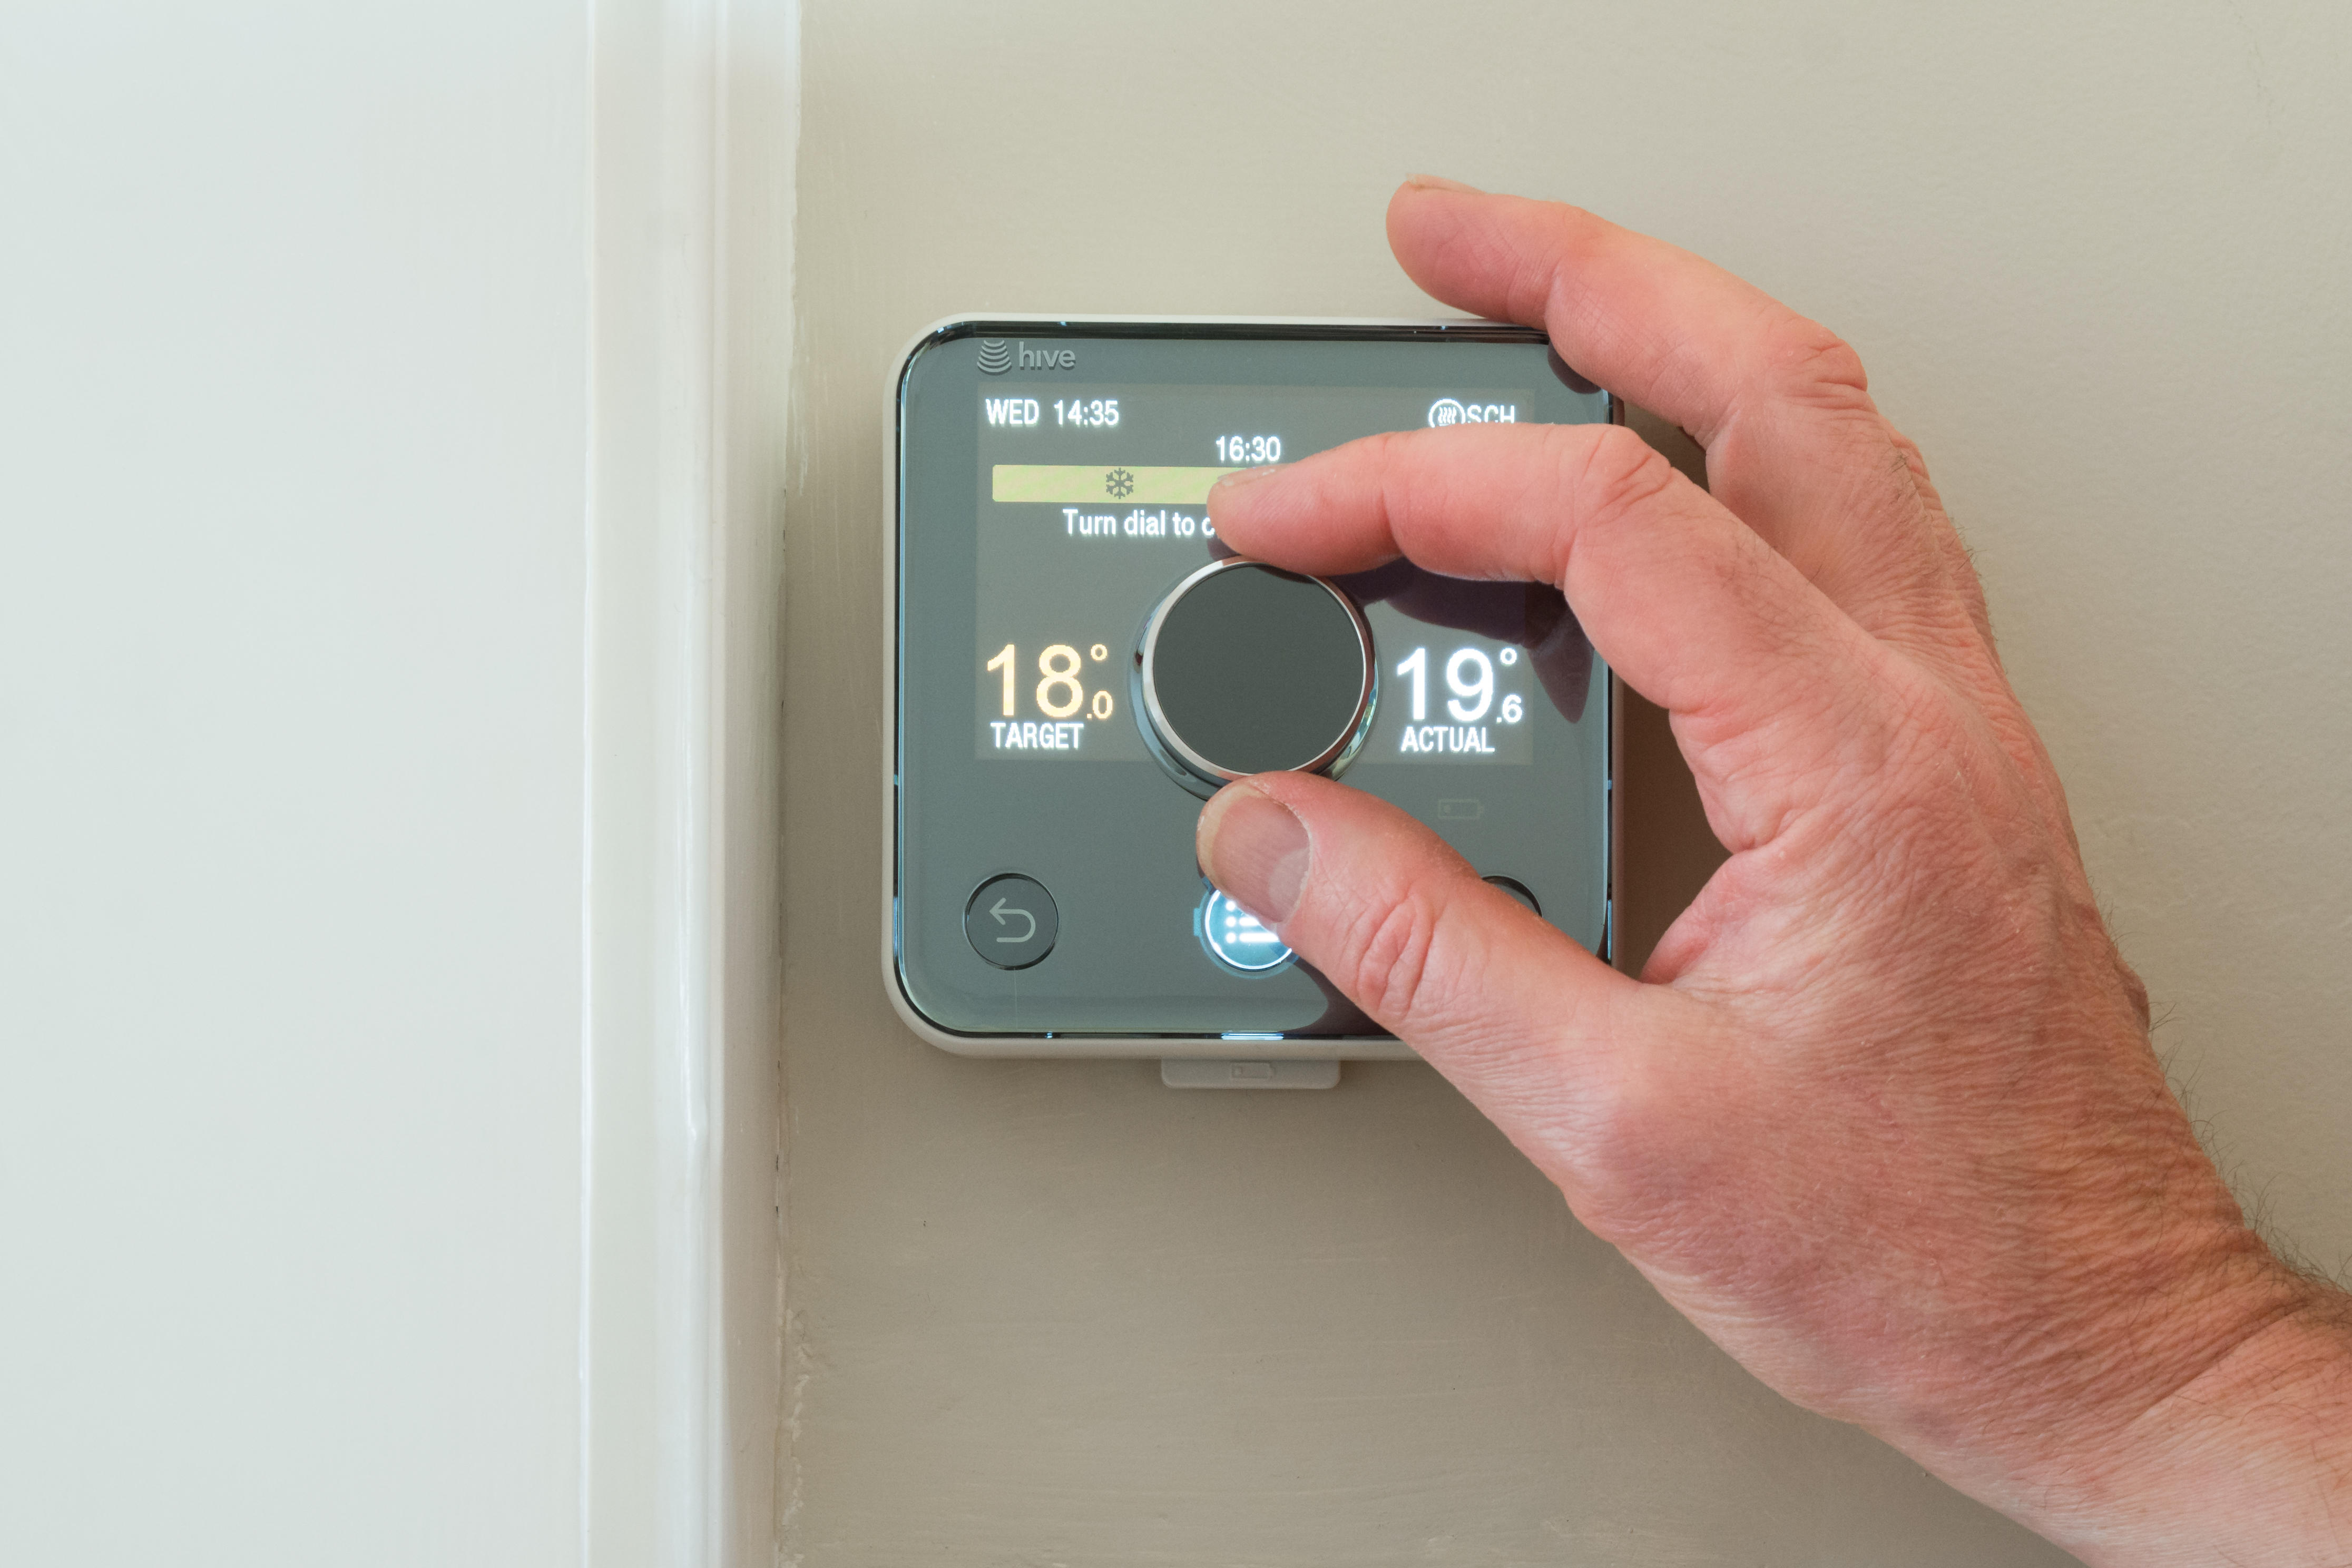 Martin Lewis schlägt vor, seine Thermostat-Challenge auszuprobieren, um 10 Prozent der Heizkosten einzusparen.